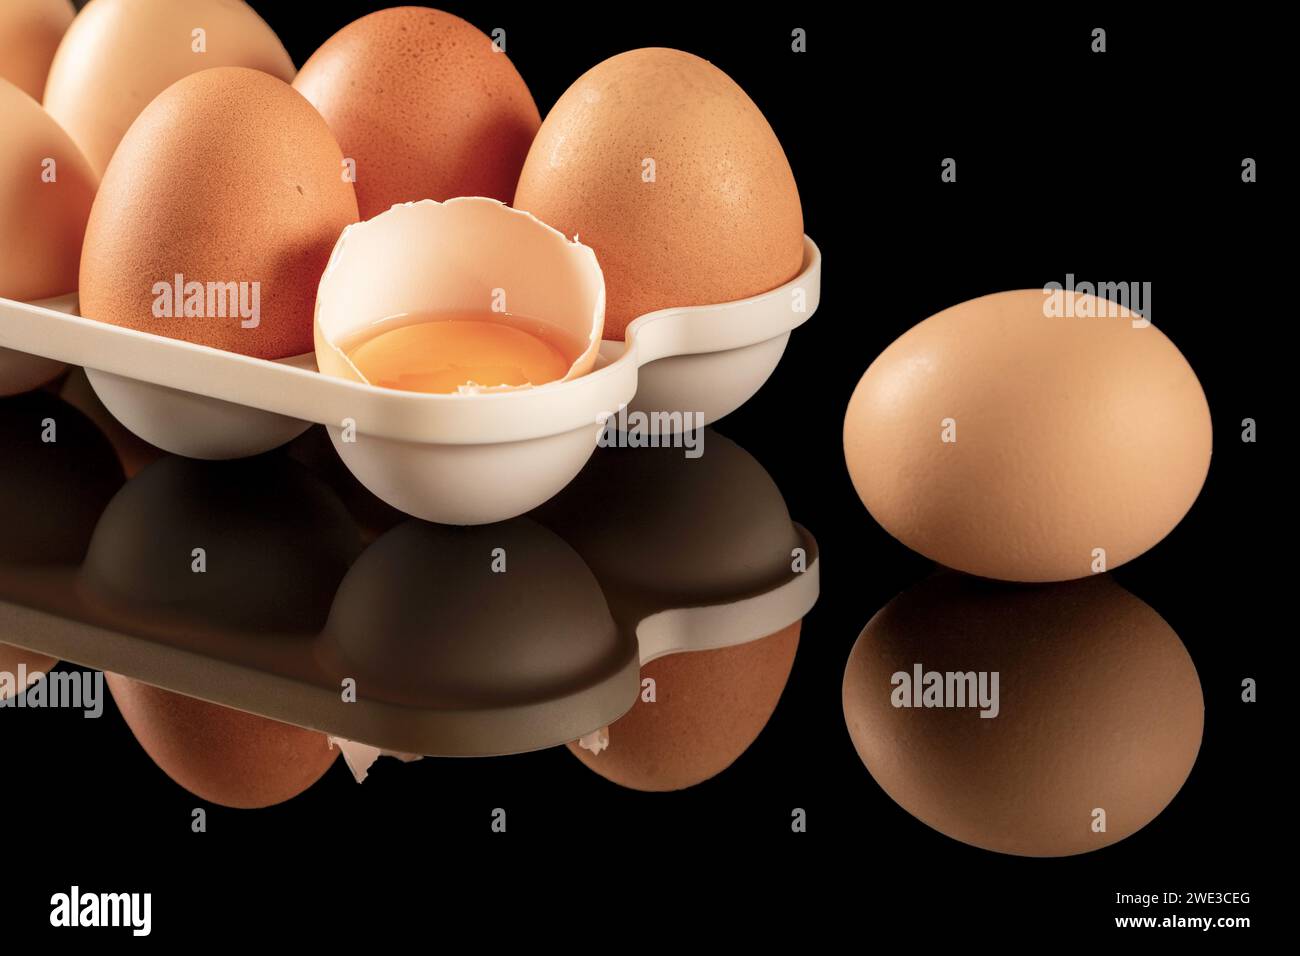 Un'immagine ravvicinata delle uova di gallina marroni esposte su una superficie nera a specchio. Le uova si riflettono sullo sfondo lucido e riflettente, creando un Foto Stock